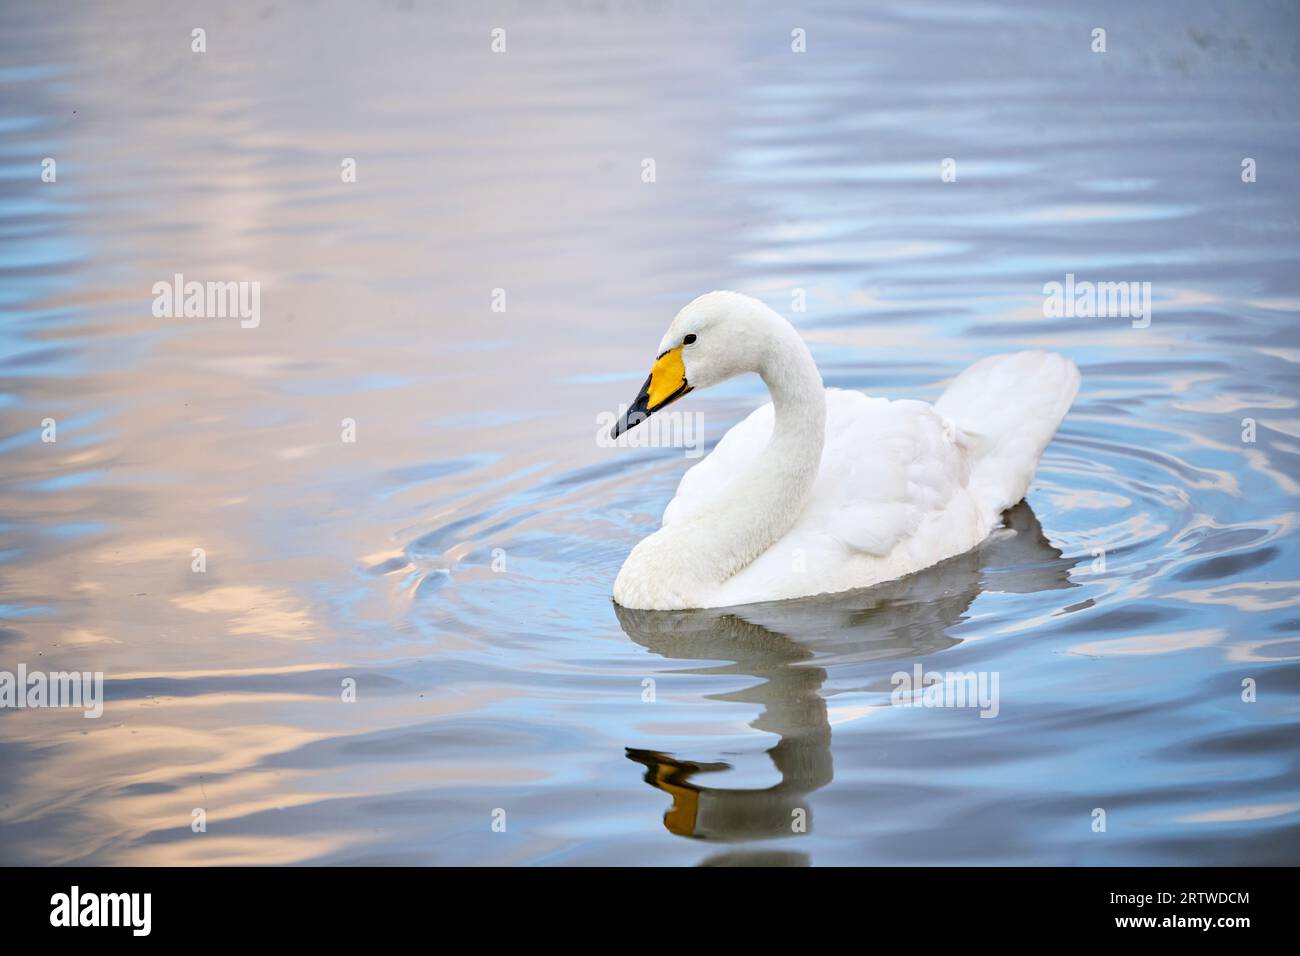 White swan swimming on lake water Stock Photo